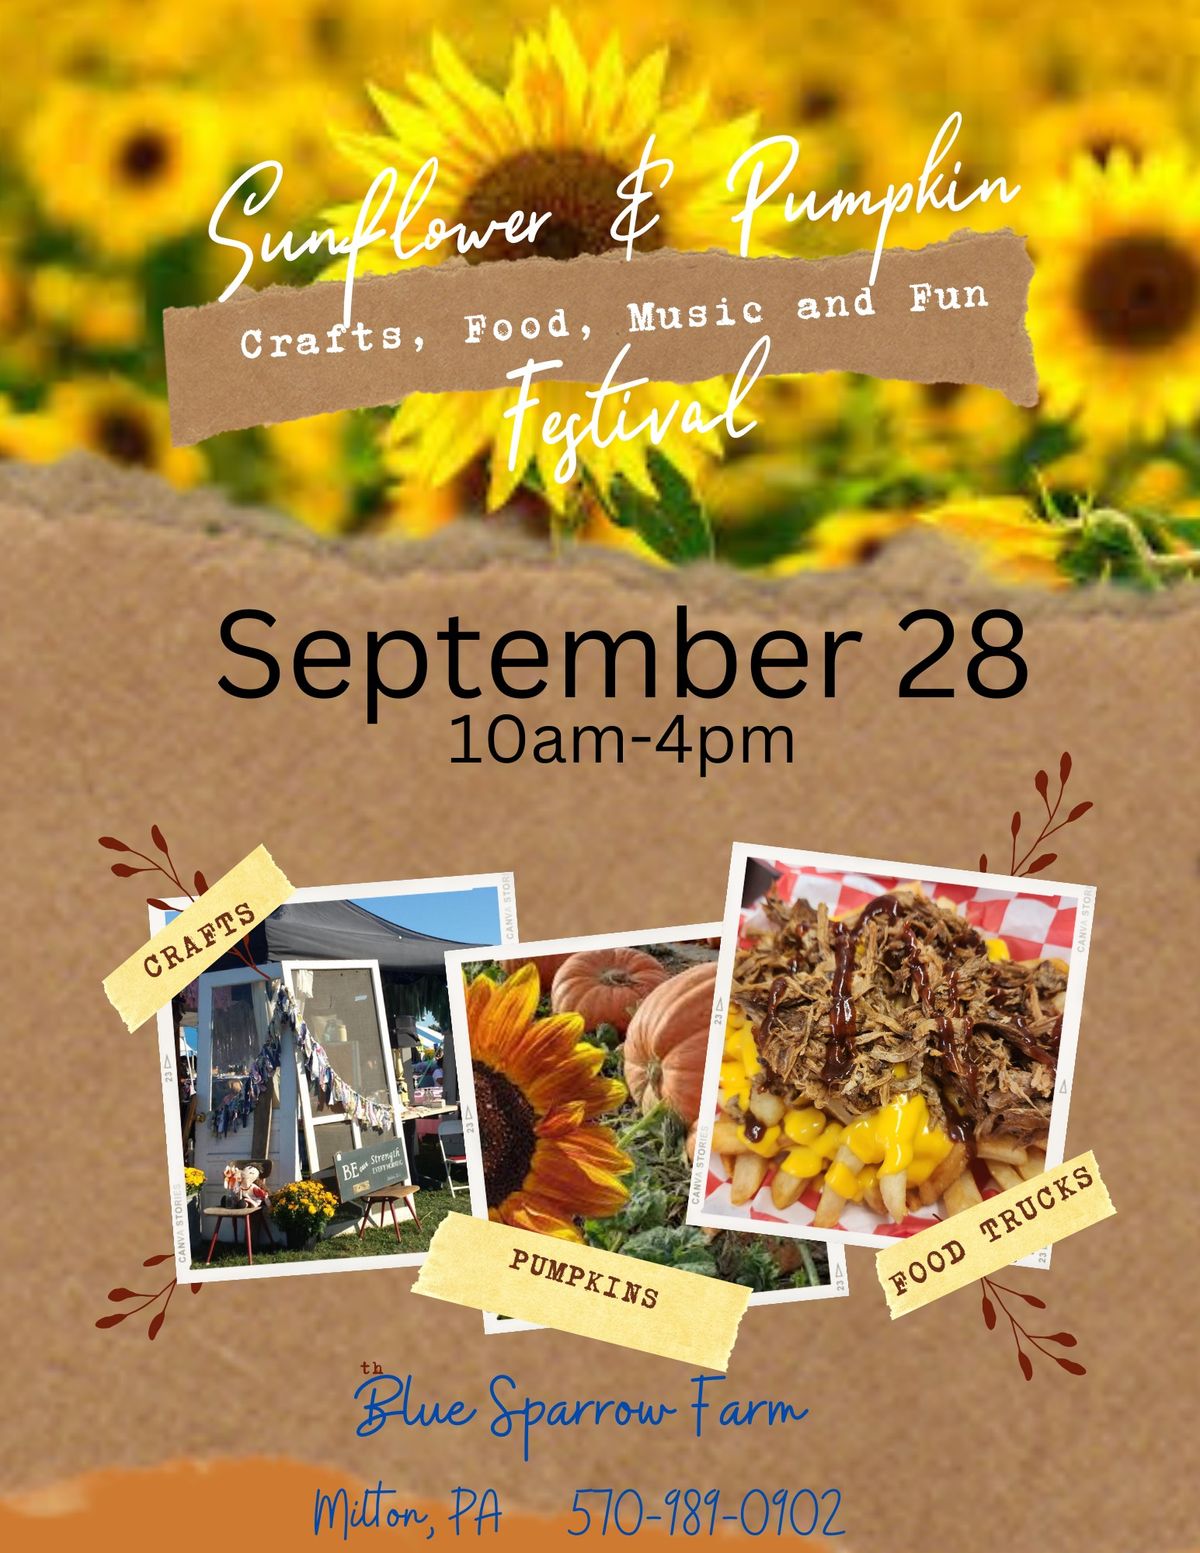 Sunflower & Pumpkin Fest